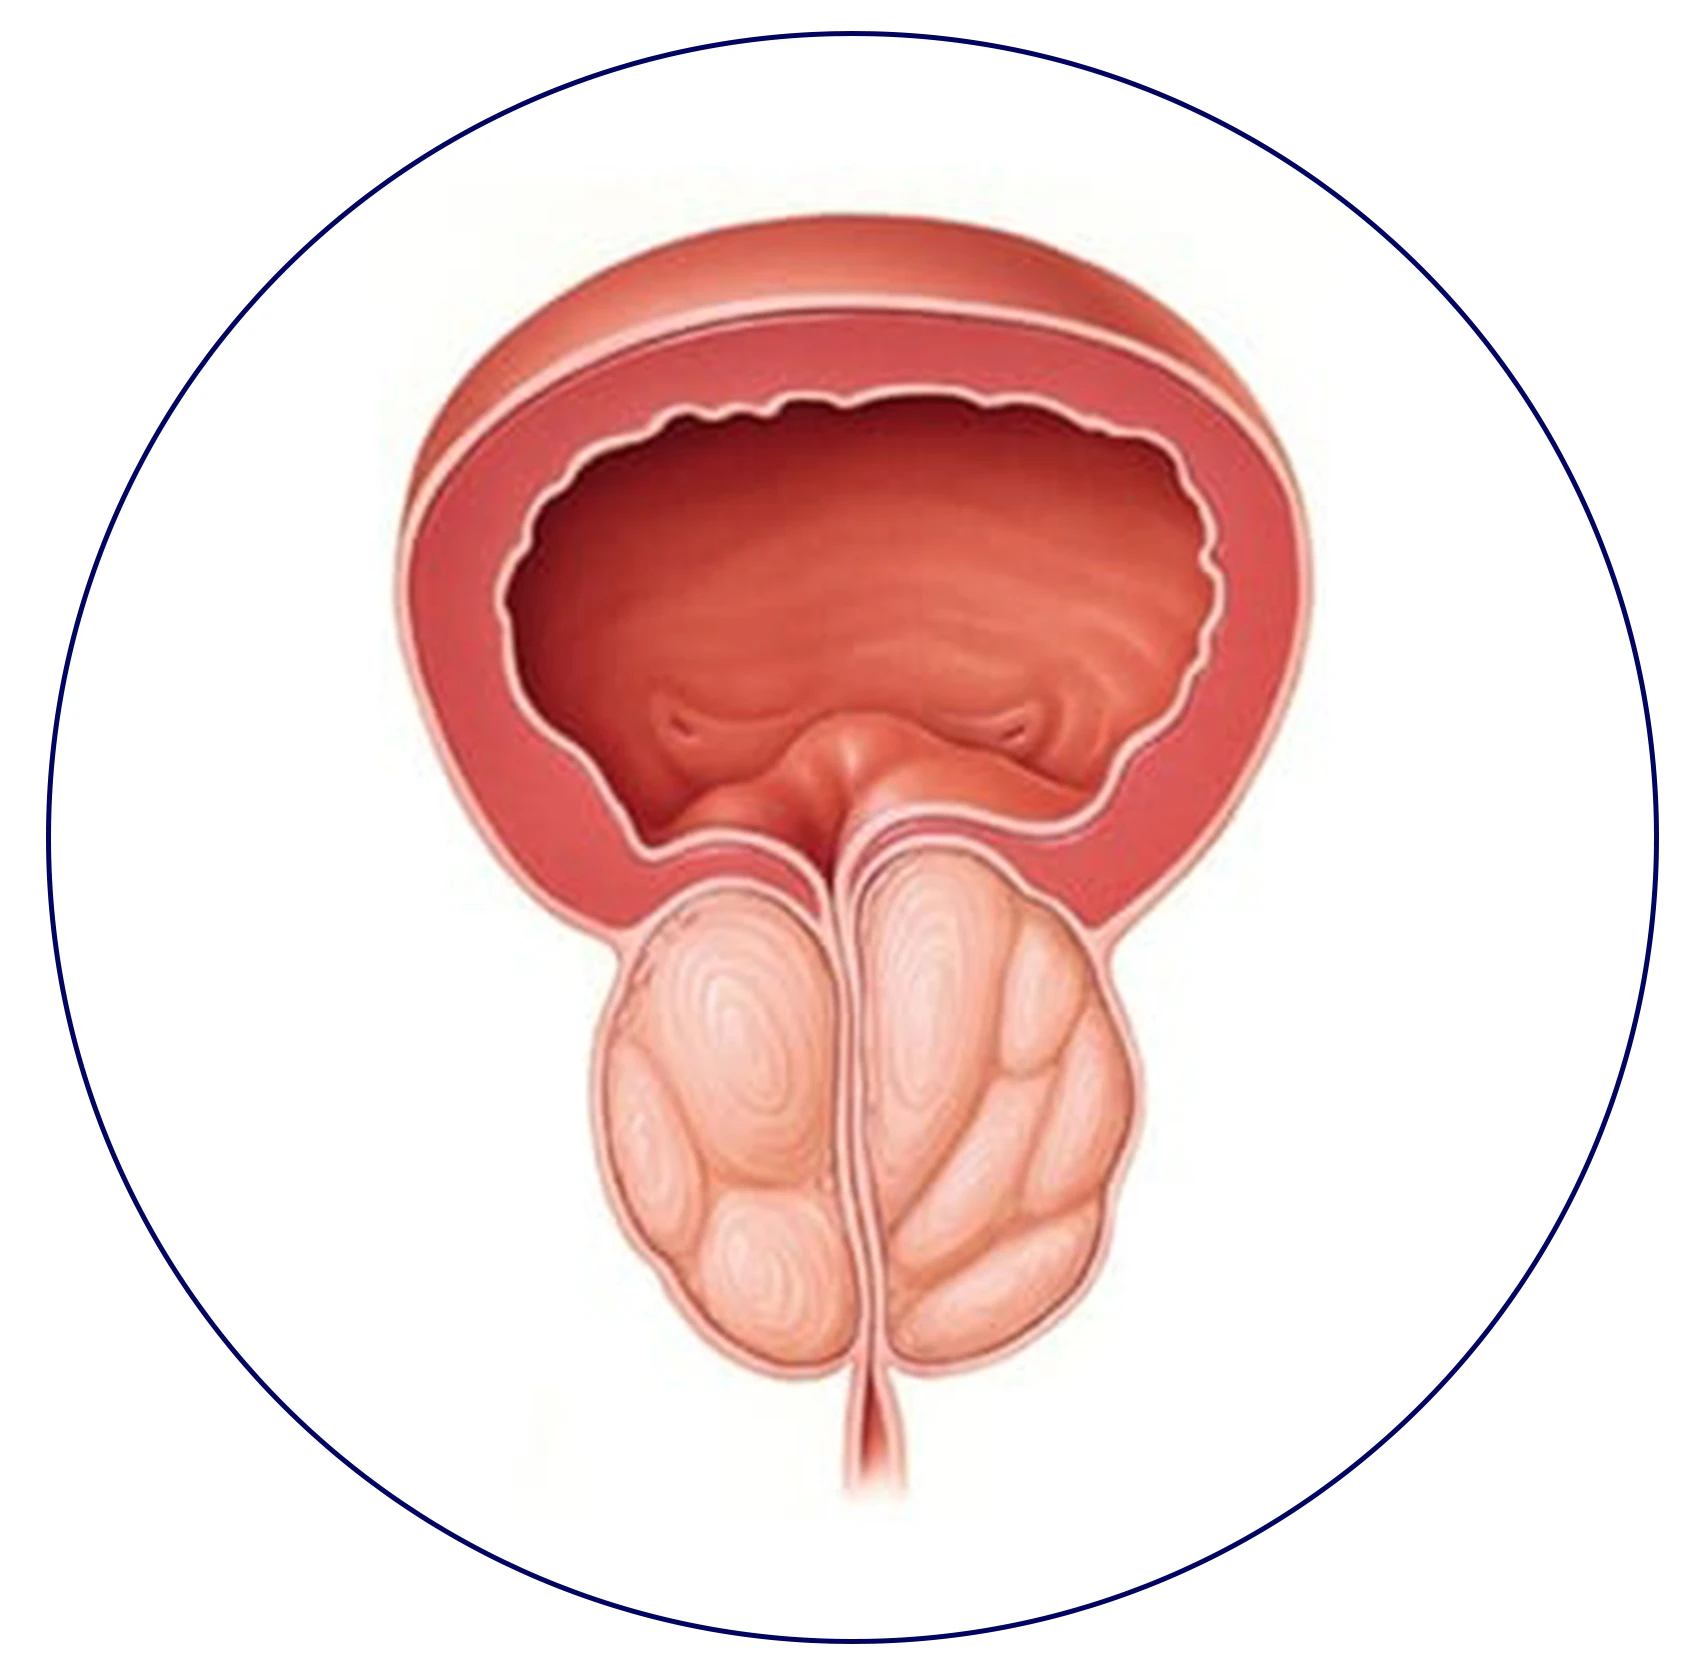 A medical illustration depicting the stages of bladder cancer.